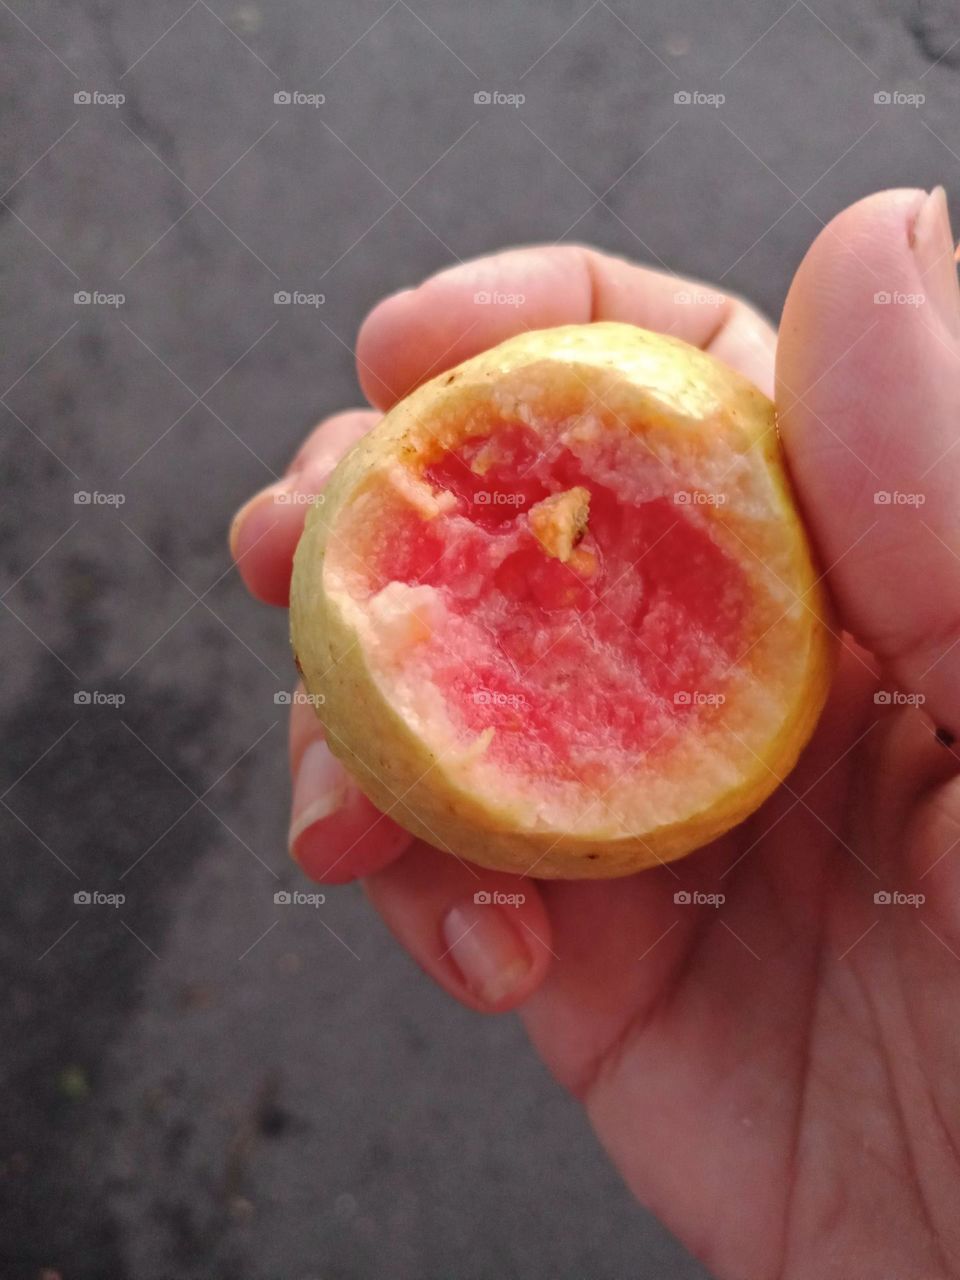 A bite at an wild guava